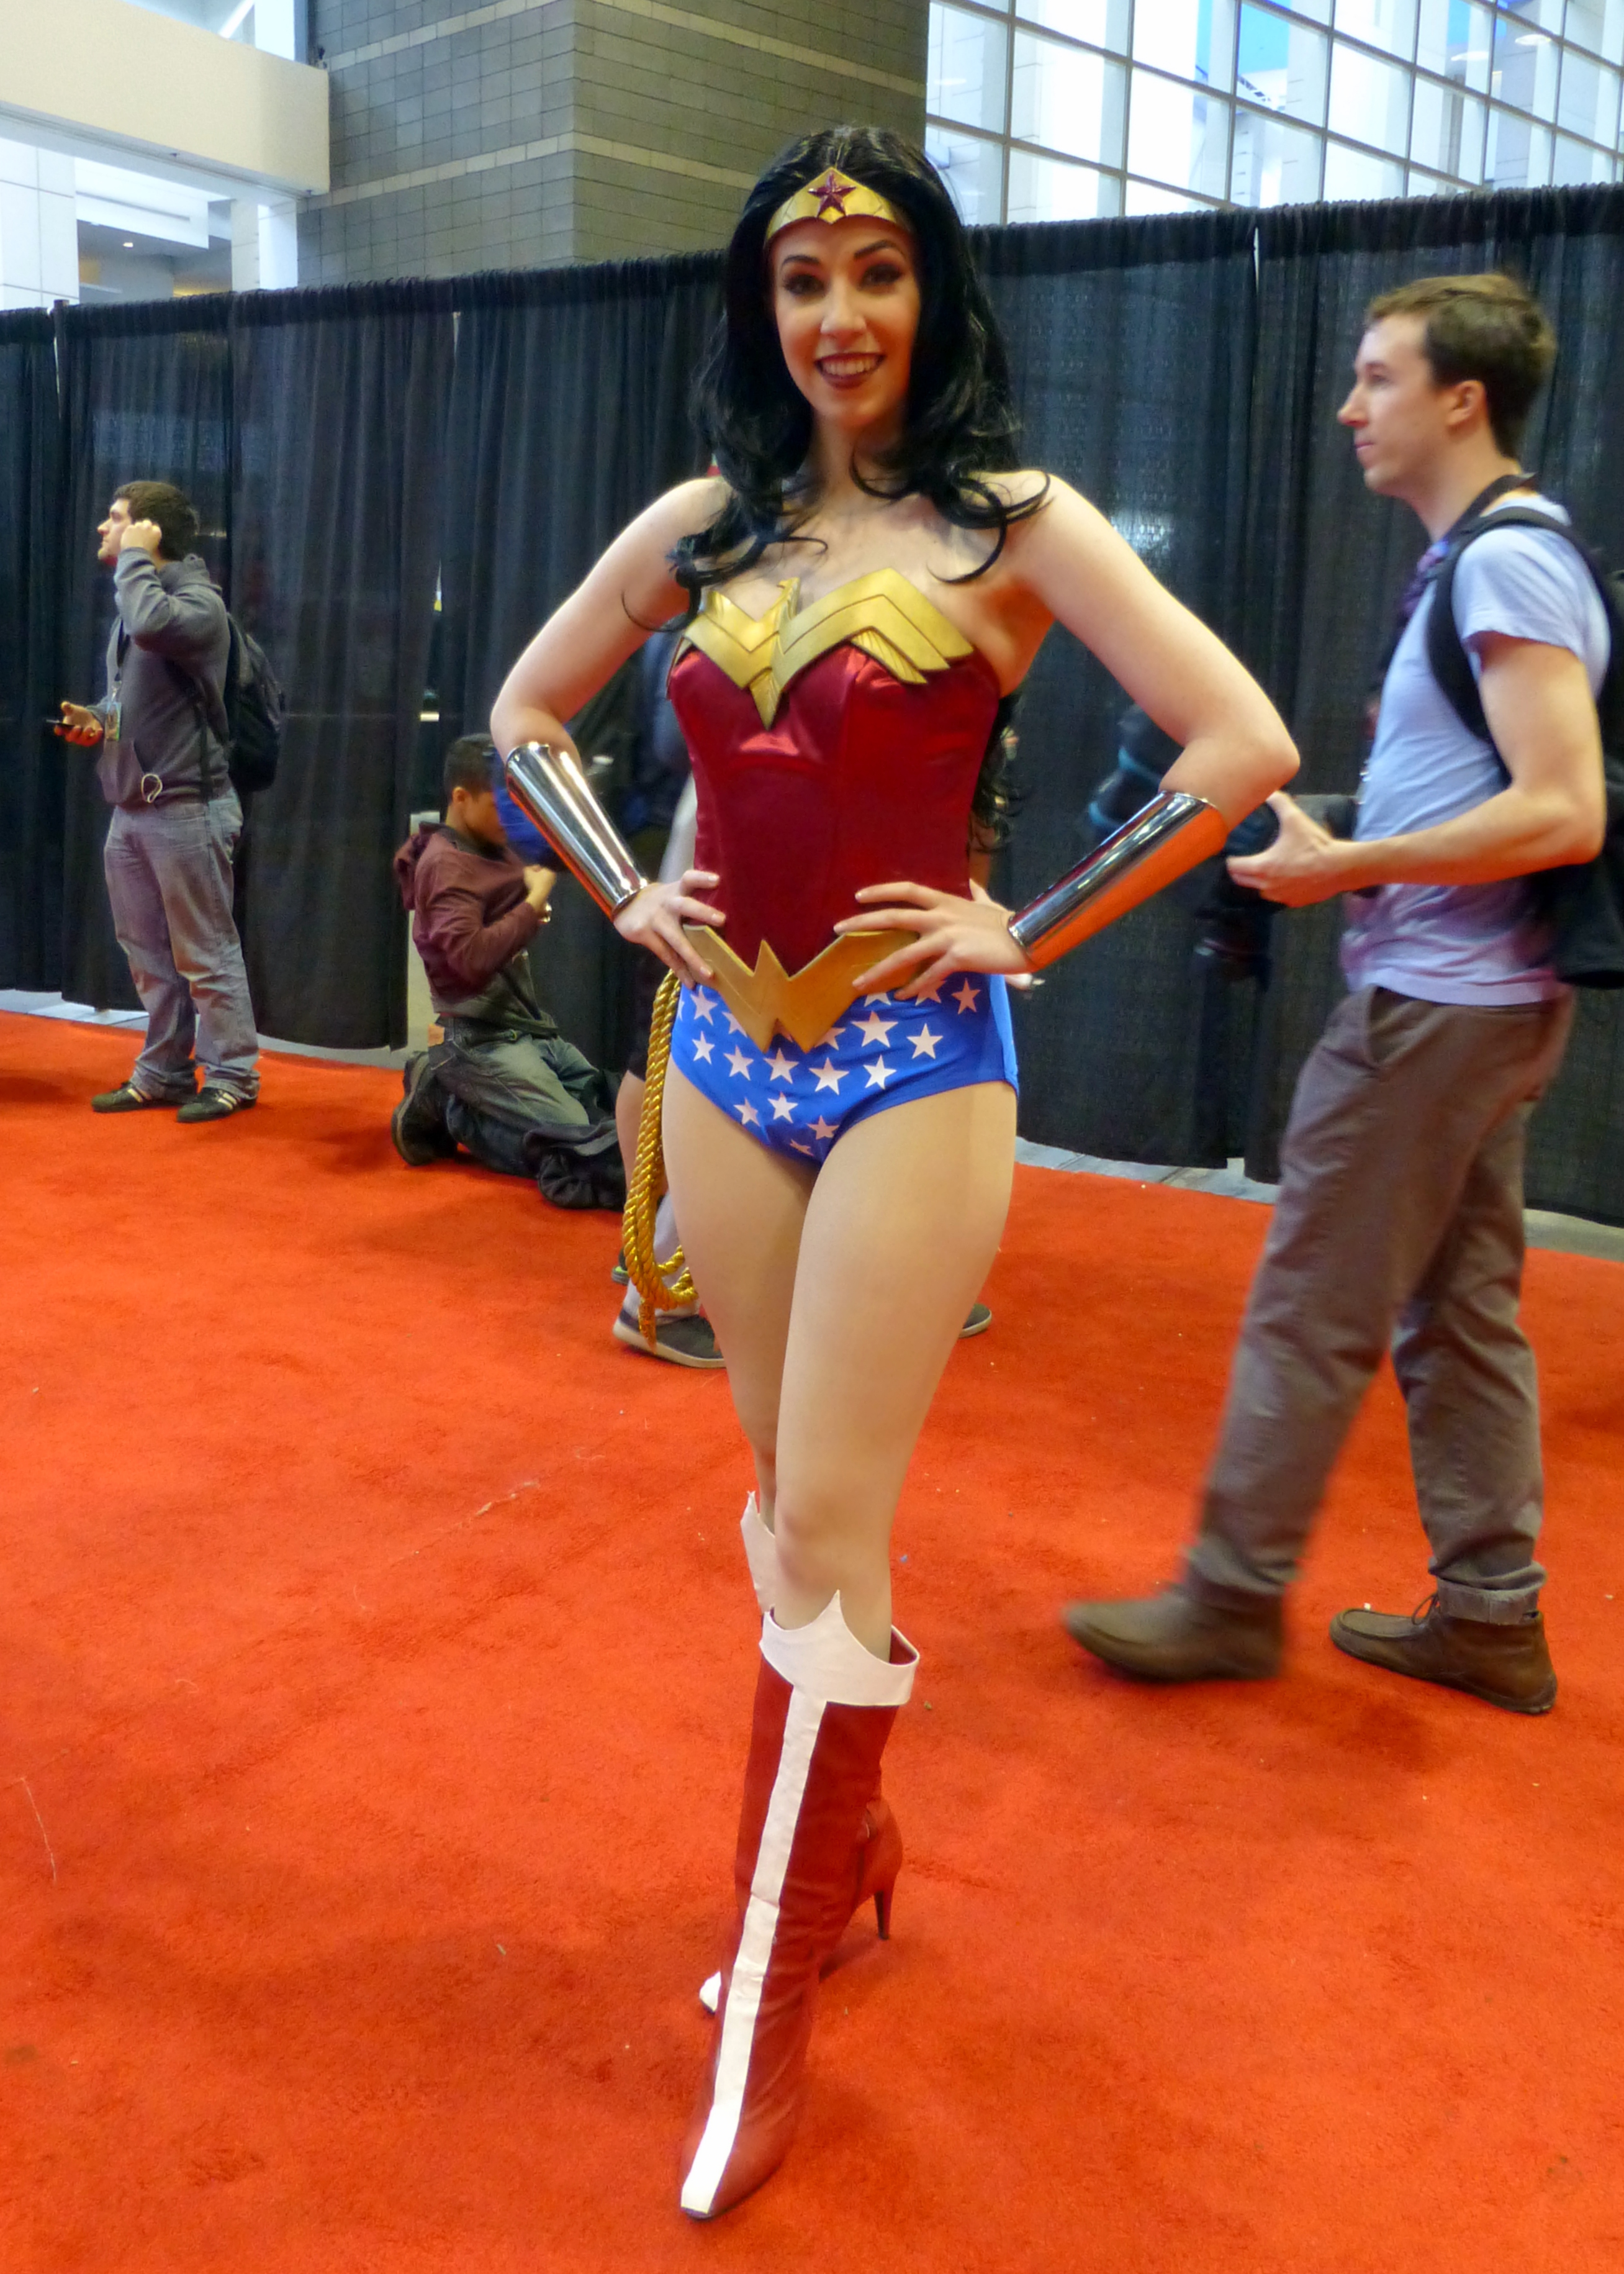 Wonder Woman - Wikipedia